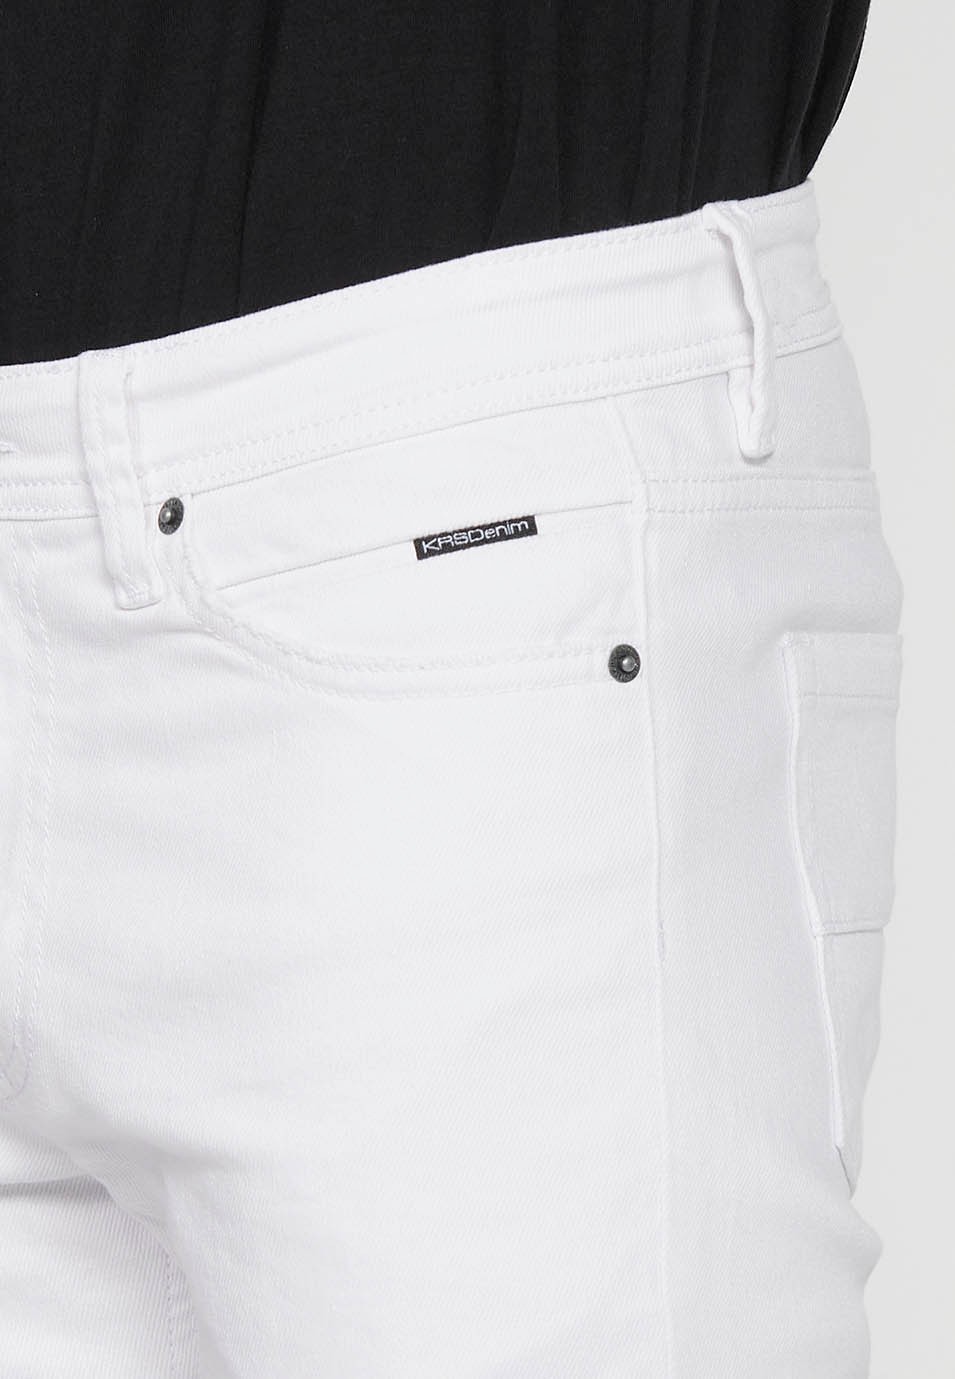 Pantalons jeans super skinny amb Tancament davanter amb cremallera i botó de Color Denim Blanc per a Home 1